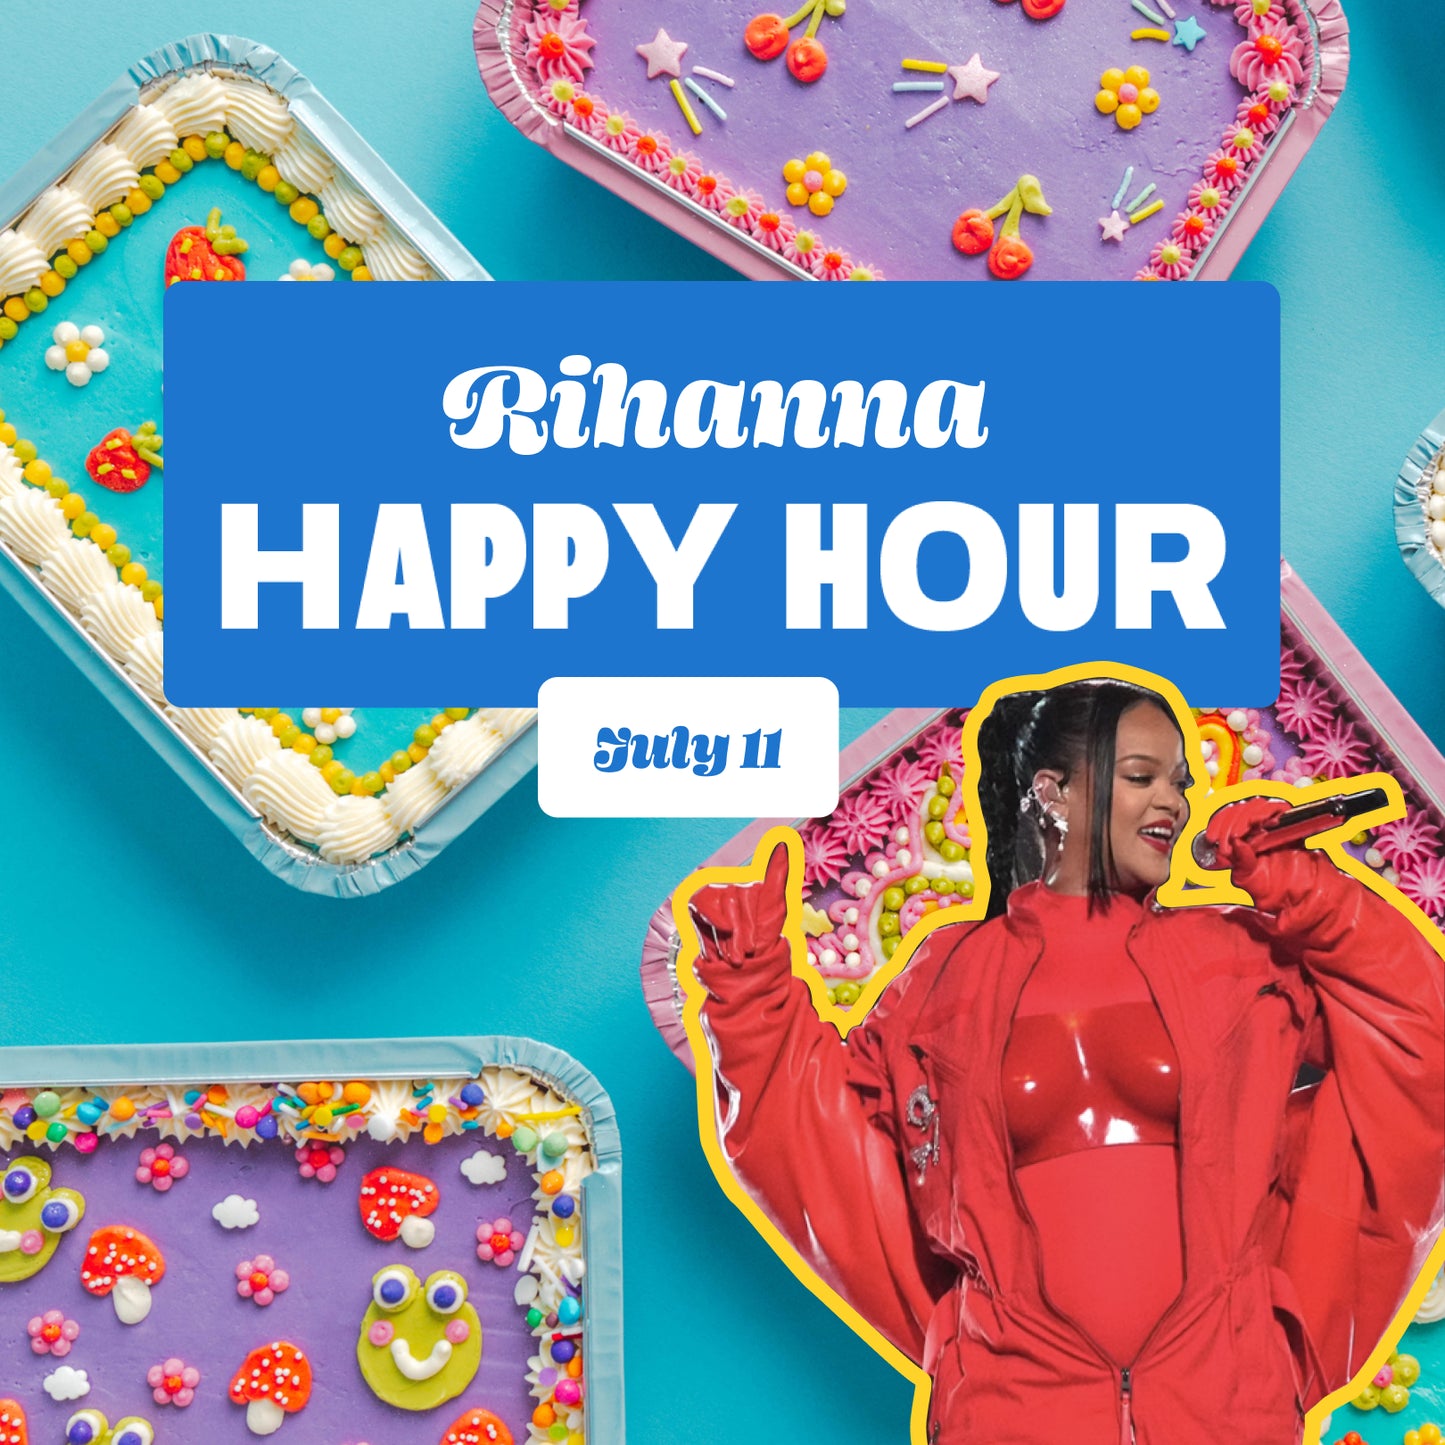 Happy Hour: Rihanna - Thursday, July 11